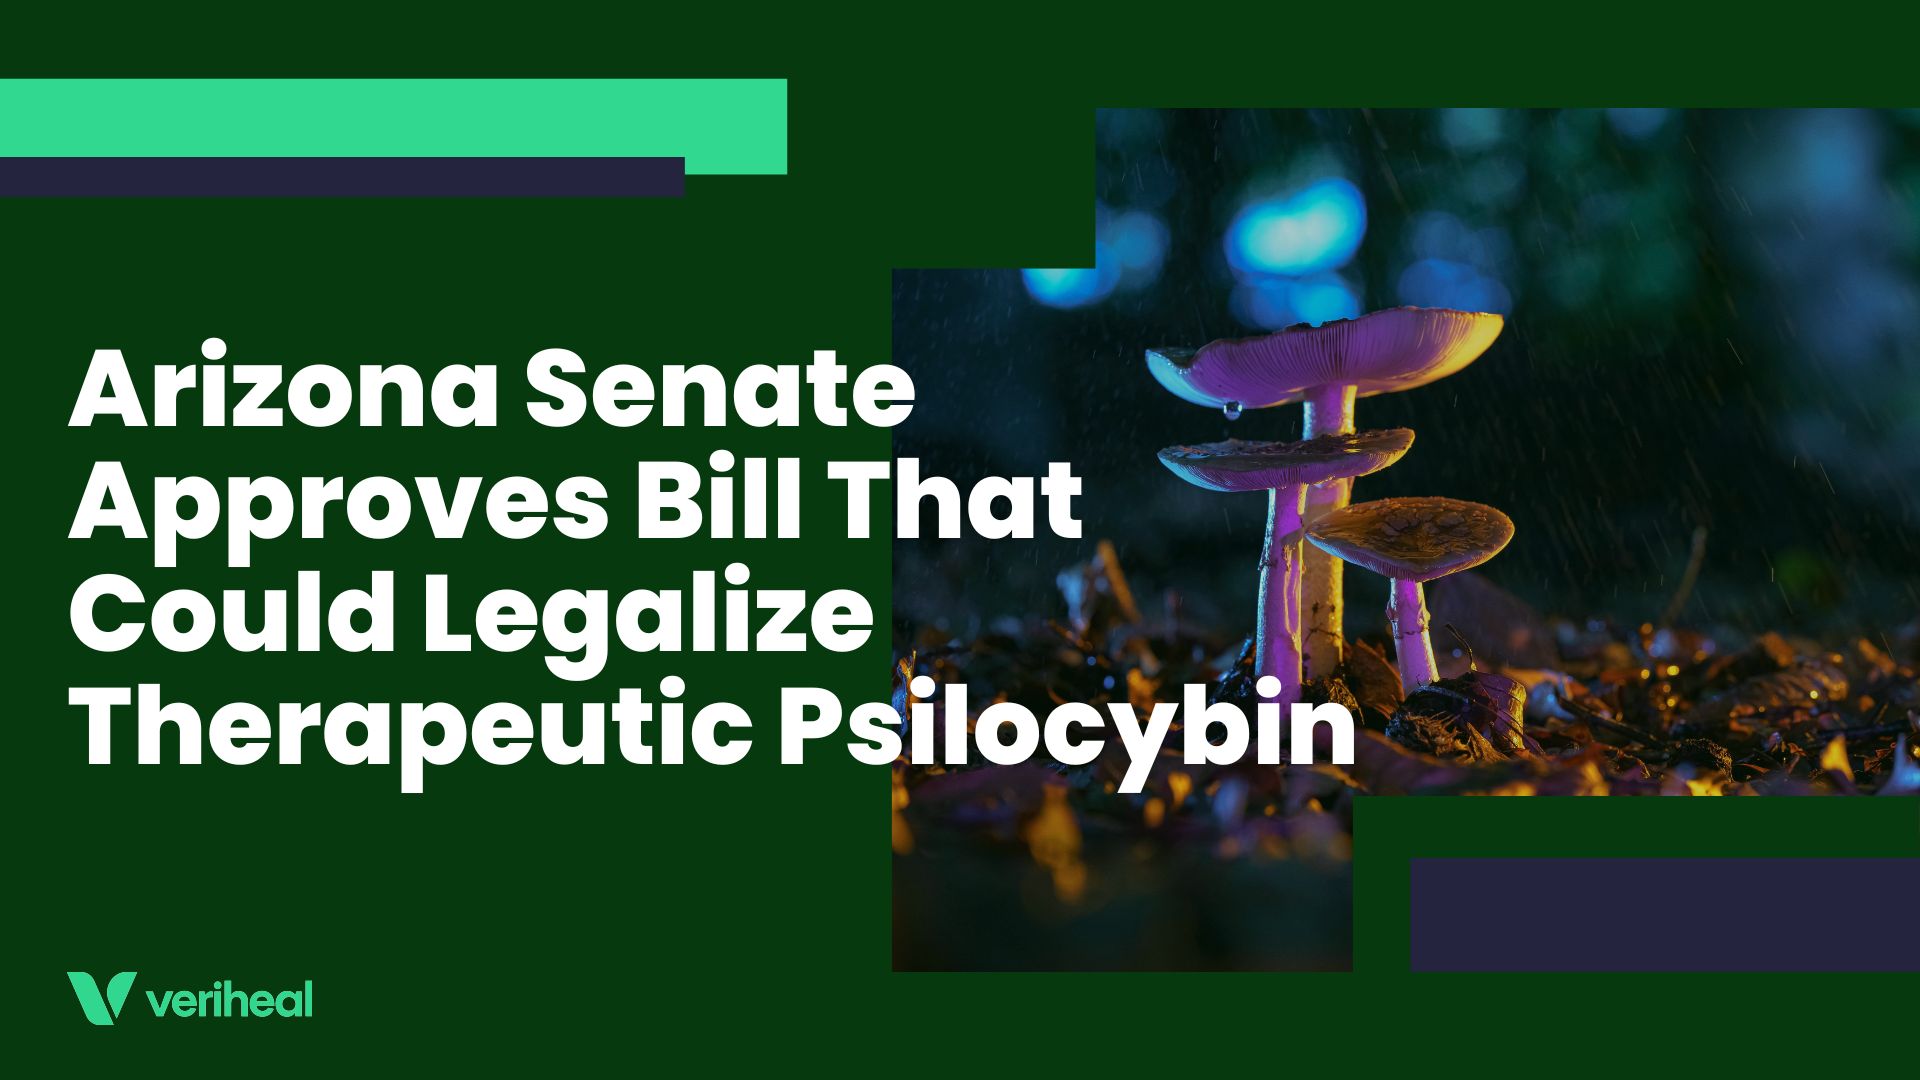 Arizona Senate Approves Bill That Could Legalize Therapeutic Psilocybin